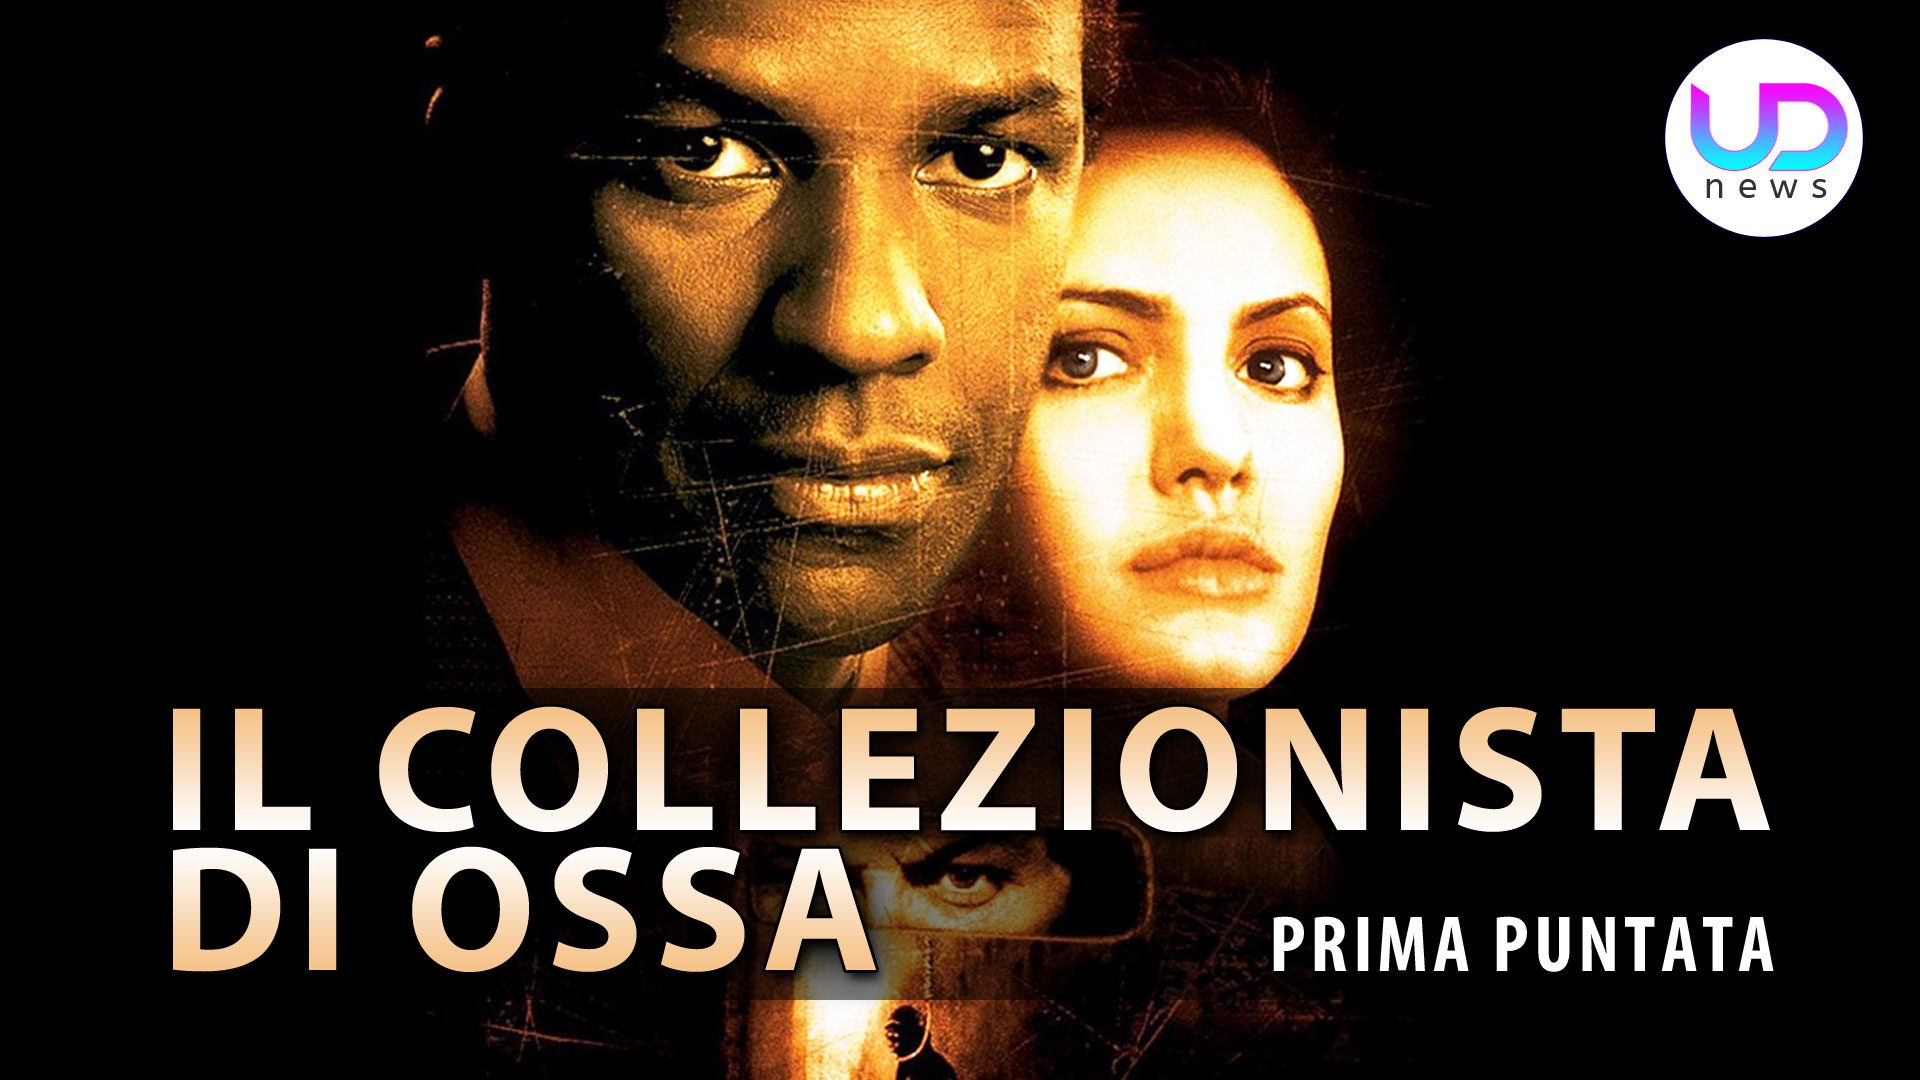 Il collezionista di ossa (1999) - Streaming | FilmTV.it